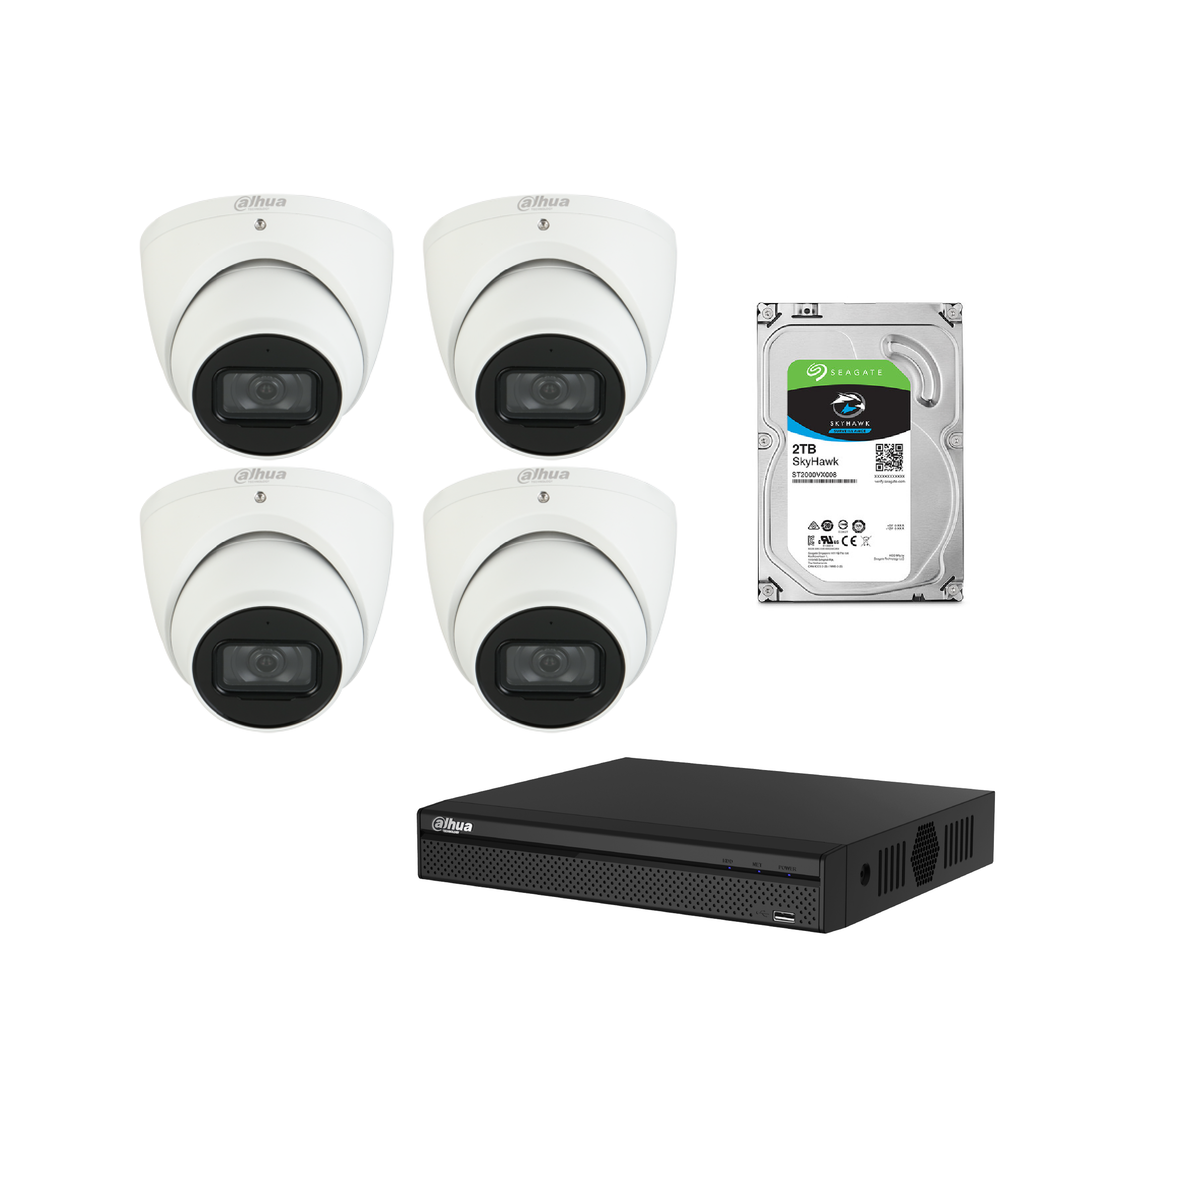 Dahua 6MP CCTV Kit: - 1 x NVR 4104 HS-P-4KS2/L- 4 x HDW 3641 TMP - 1 x 1TB HDD